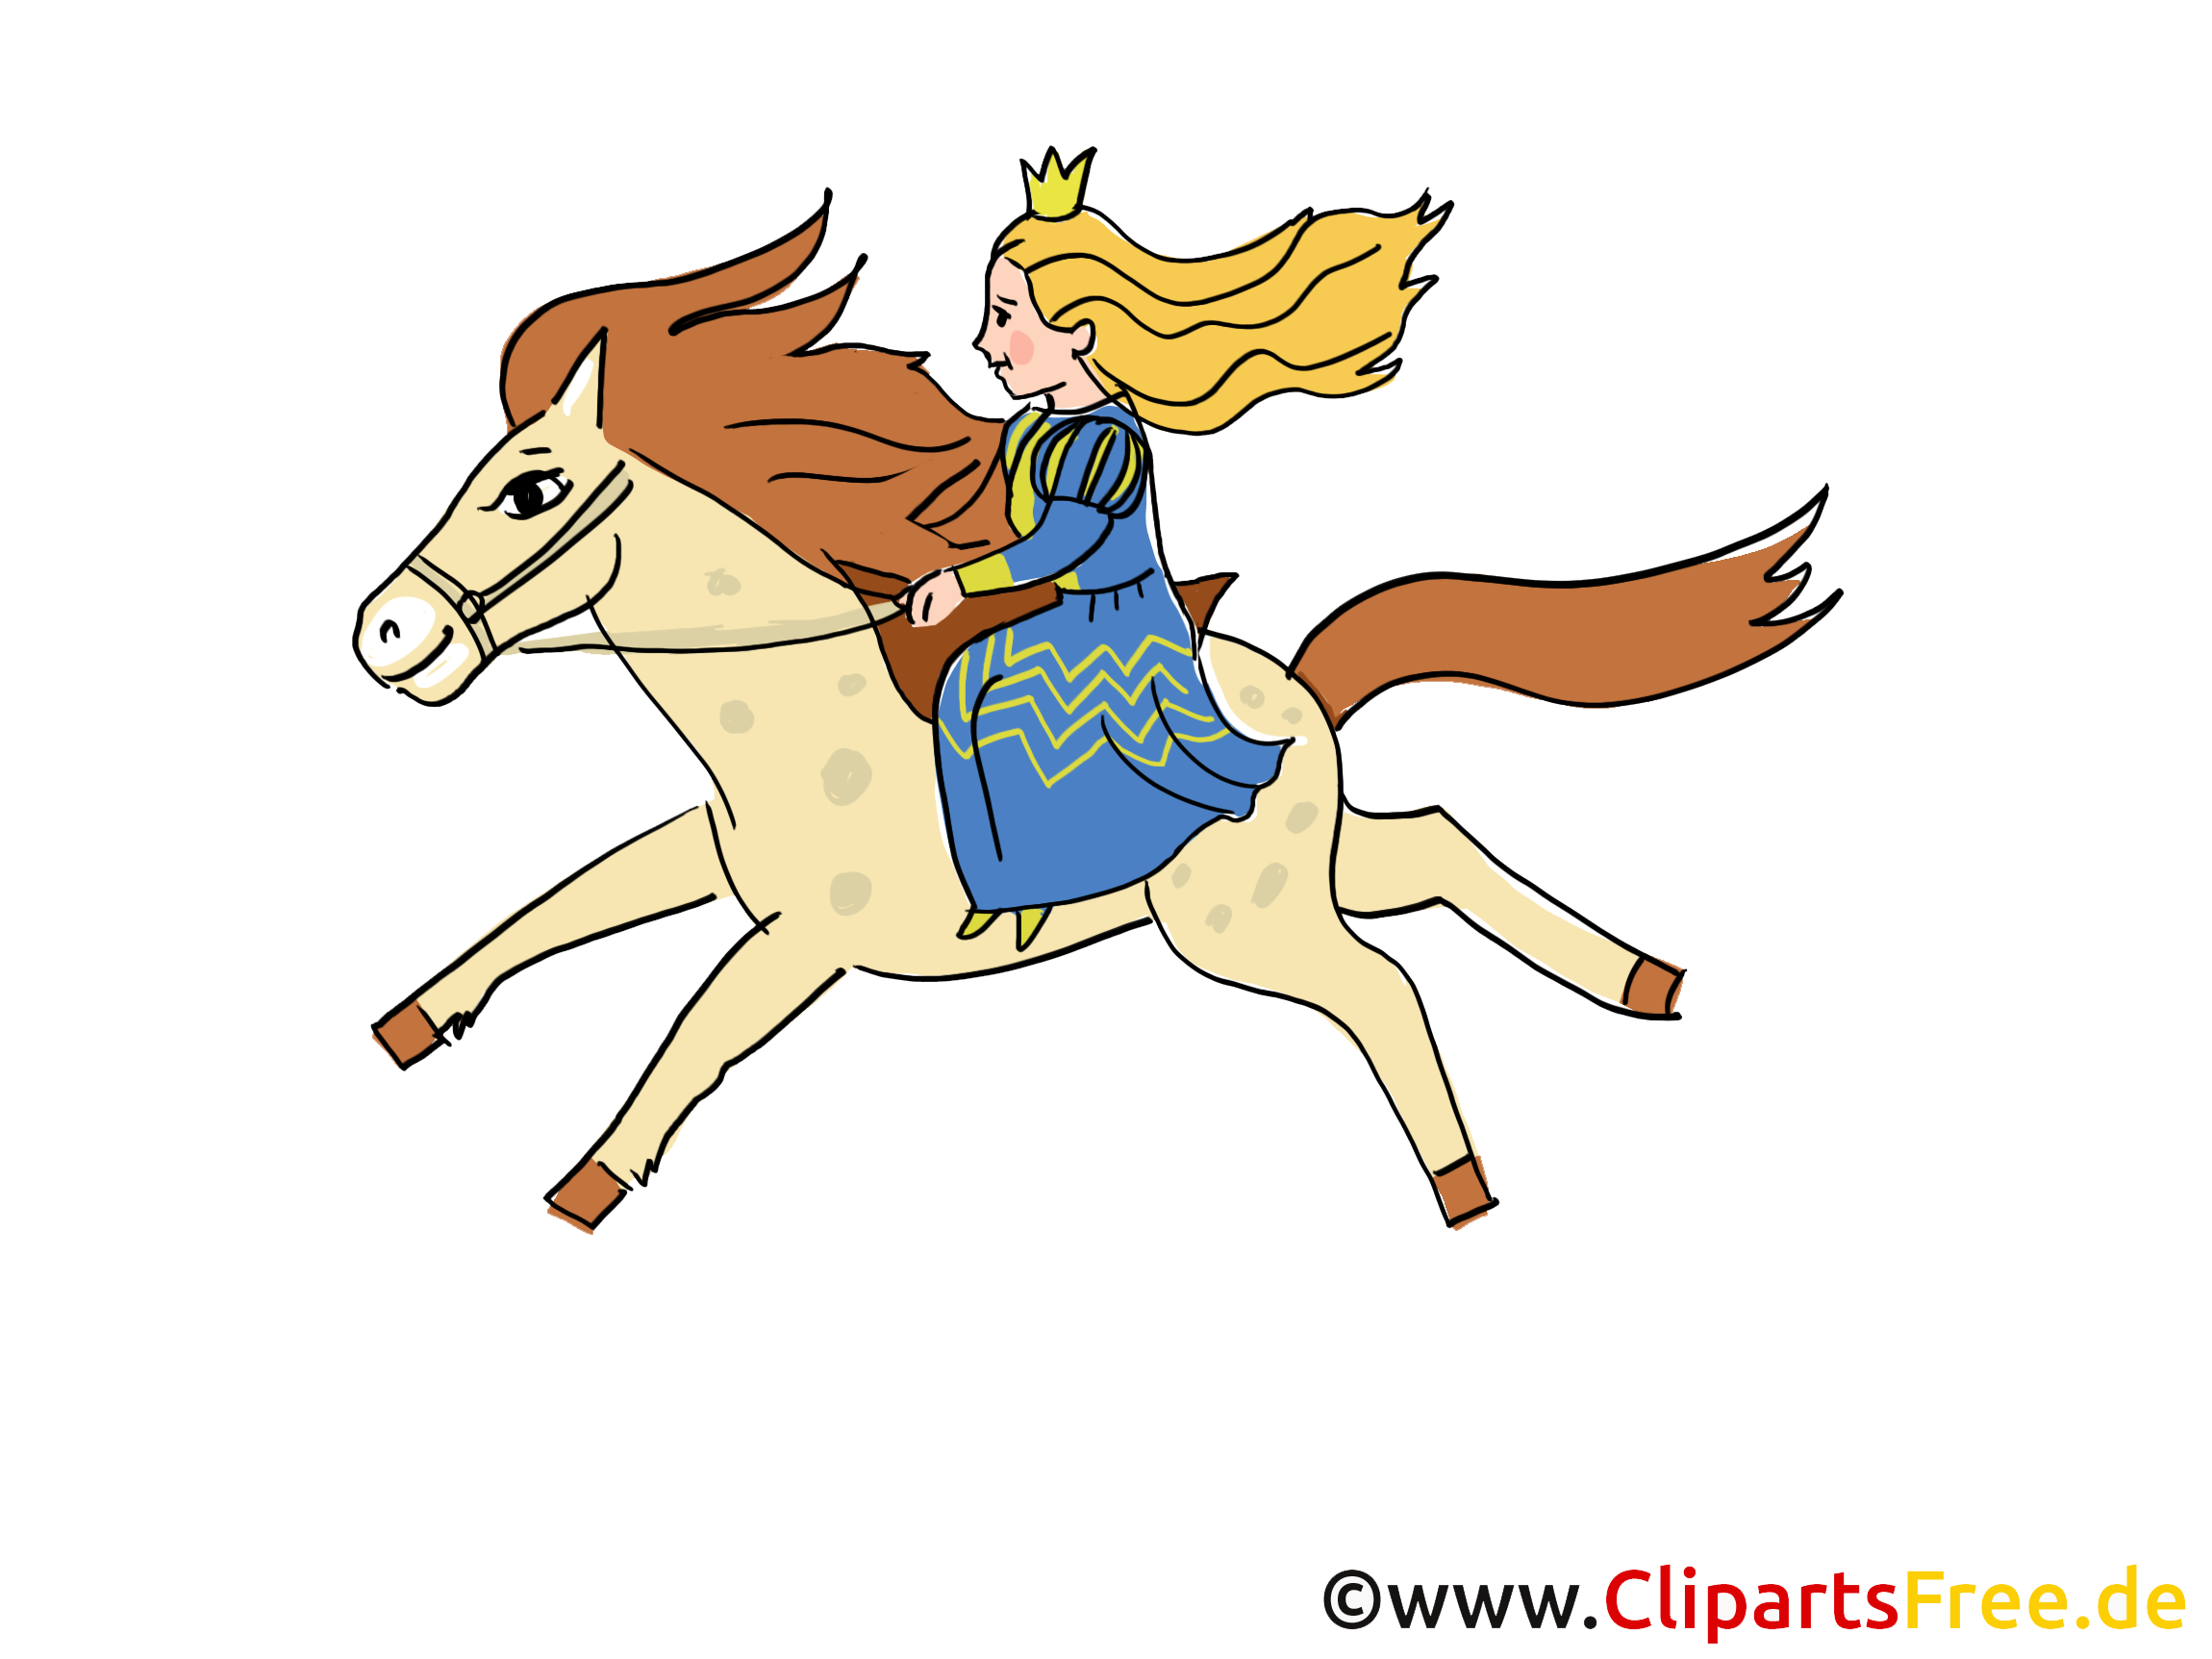 Принцесса едет. Сказочные лошади. Принцесса катается на лошади. Рисунки сказочных героев на лошади. Принцесса с лошадкой картинка.